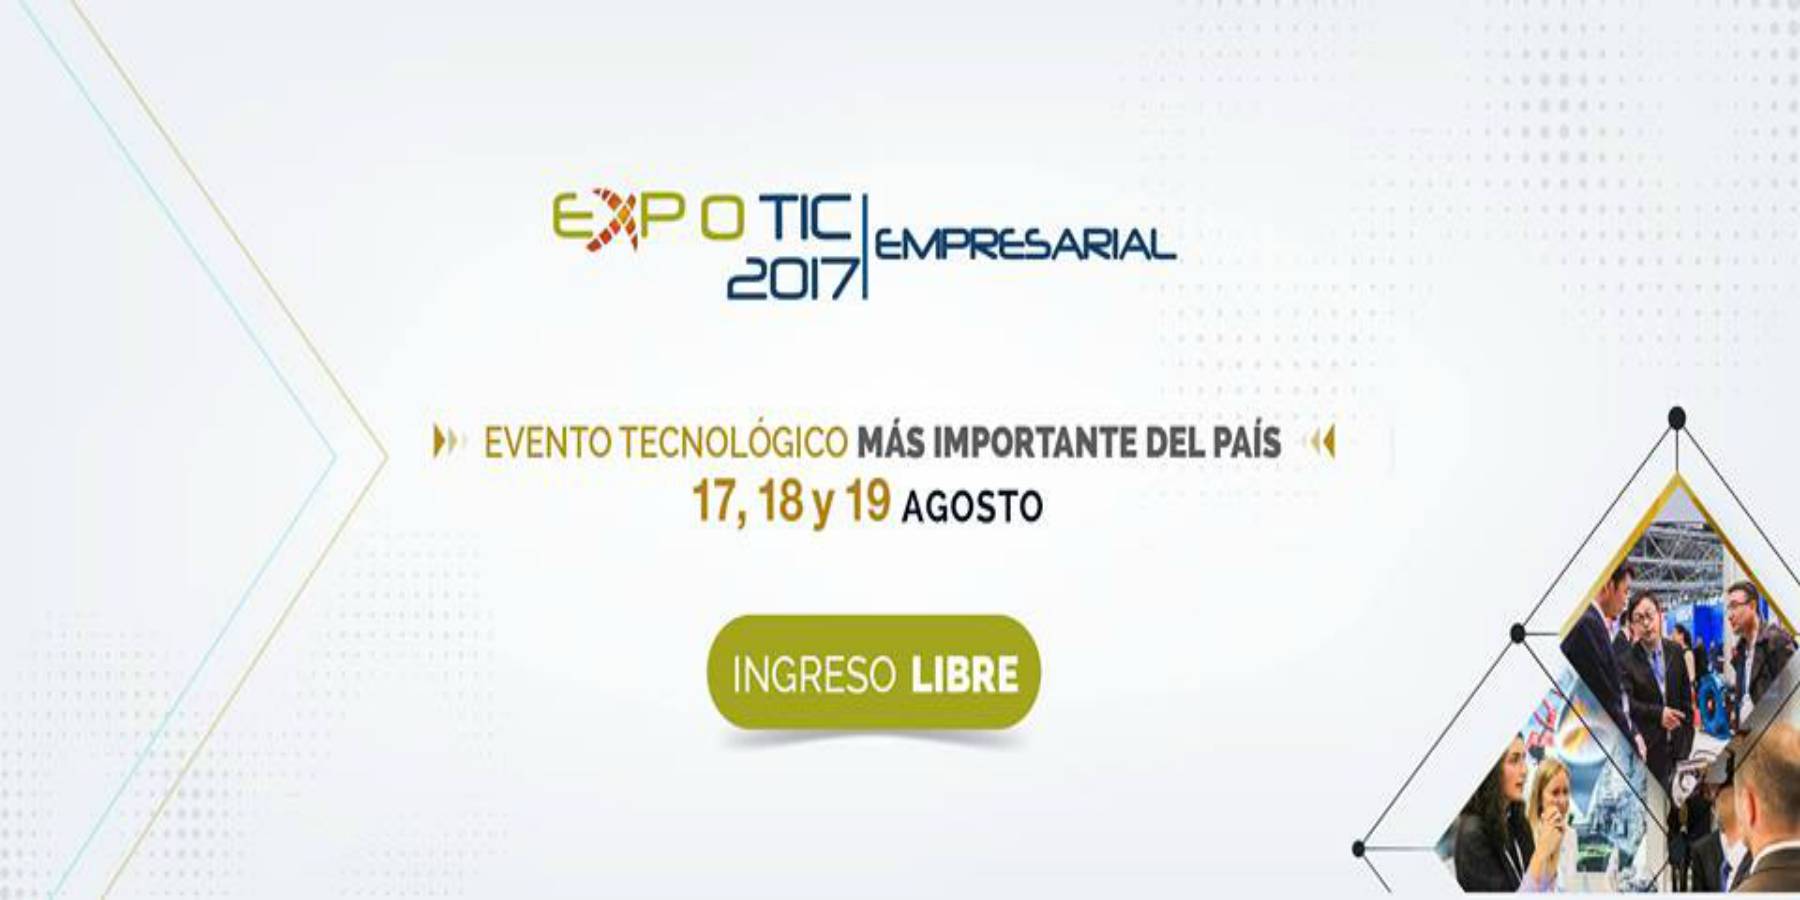 VI Expotic Empresarial 2017 en la Cámara de Comercio de Lima